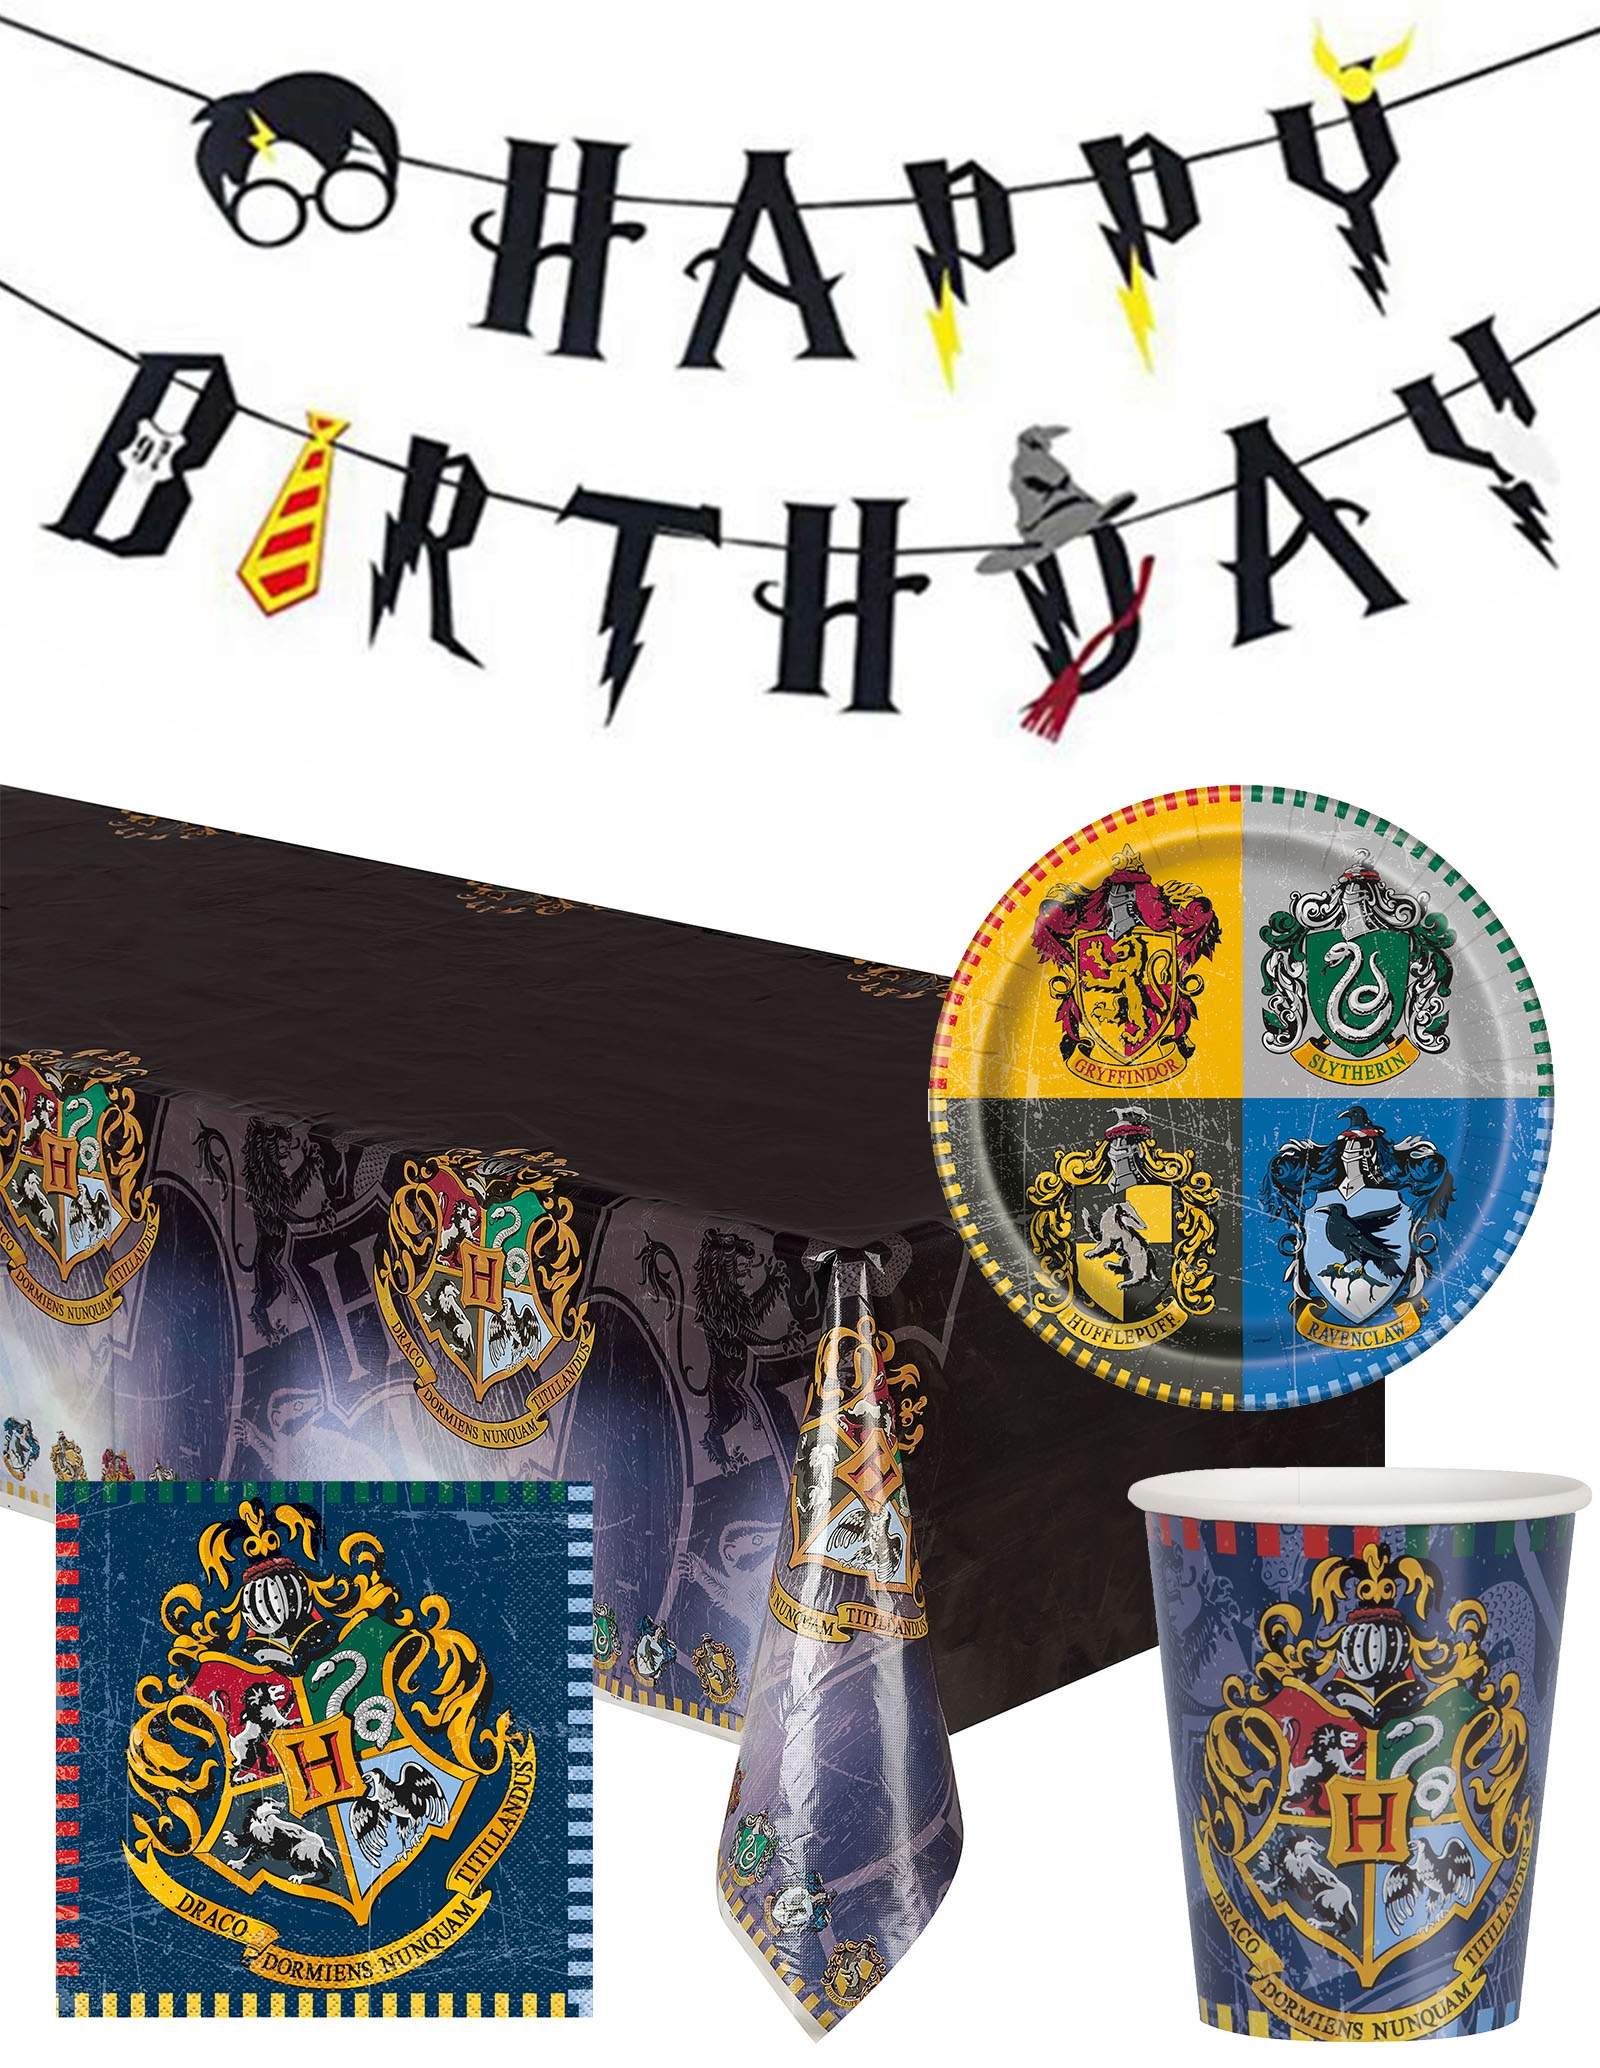 Une décoration Harry Potter d'anniversaire - Blog